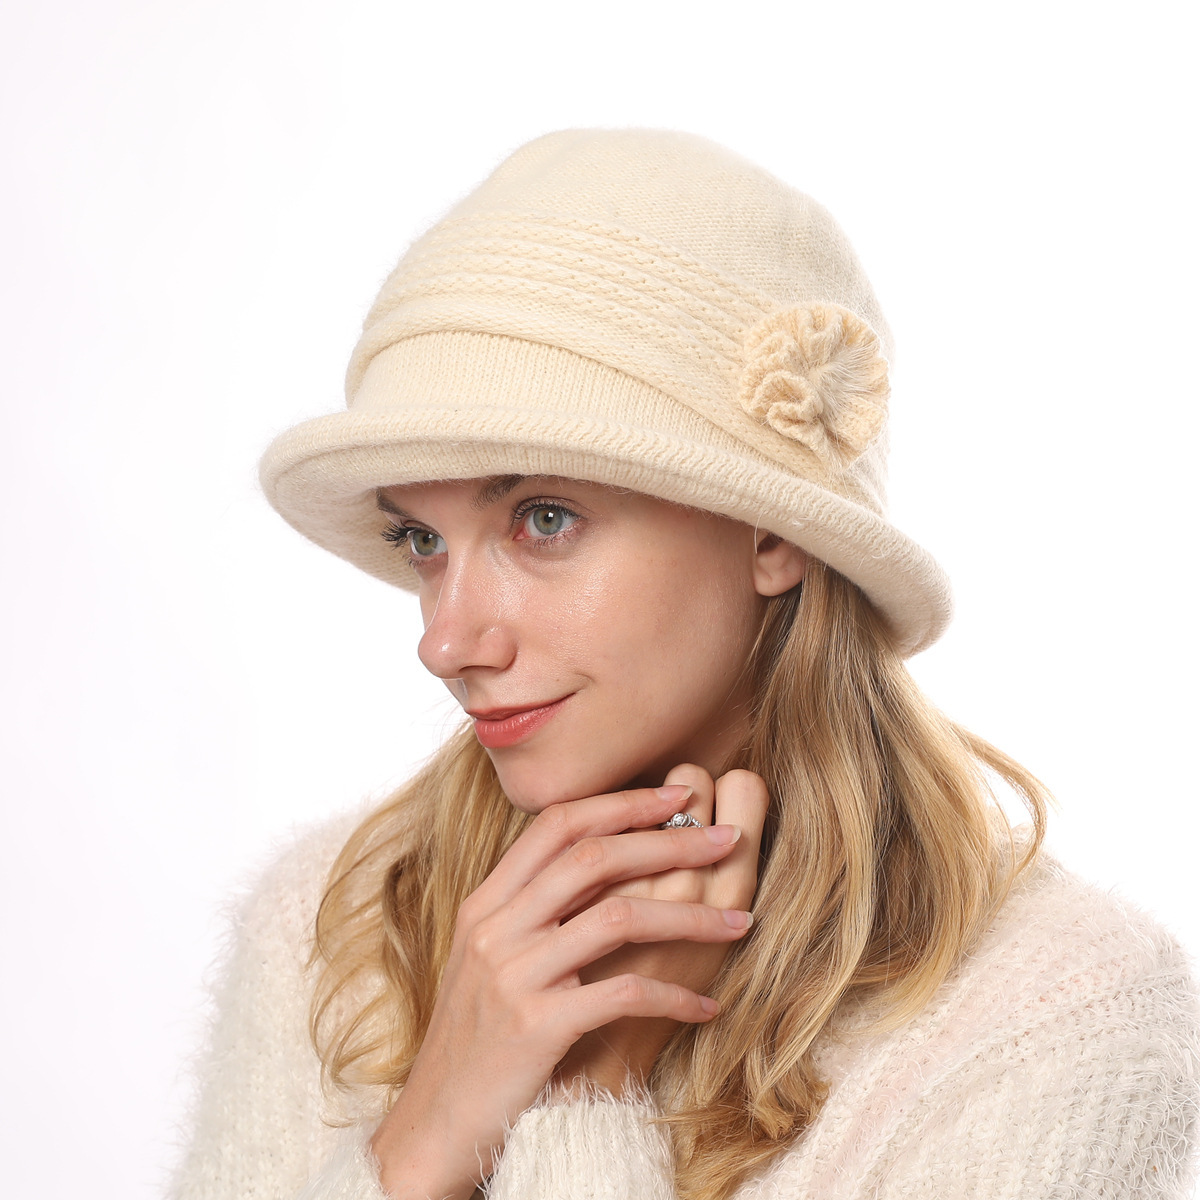 Головные уборы в классическом стиле женски. Hat теплая на белом фоне. Теплые шляпы